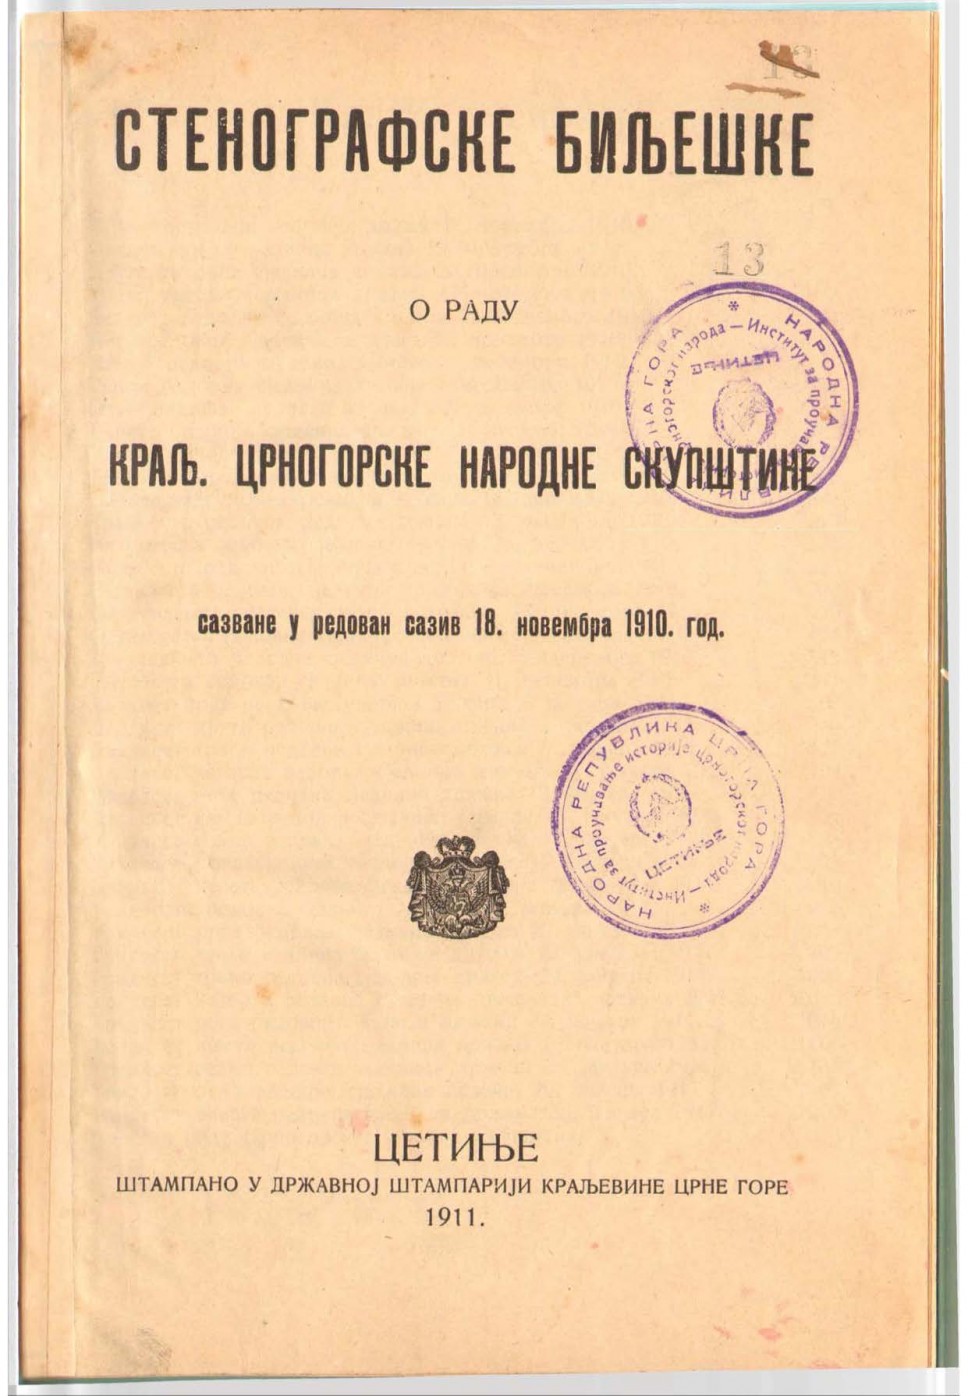 Stenografske bilješke crnogorske narodne skupštine, 1910